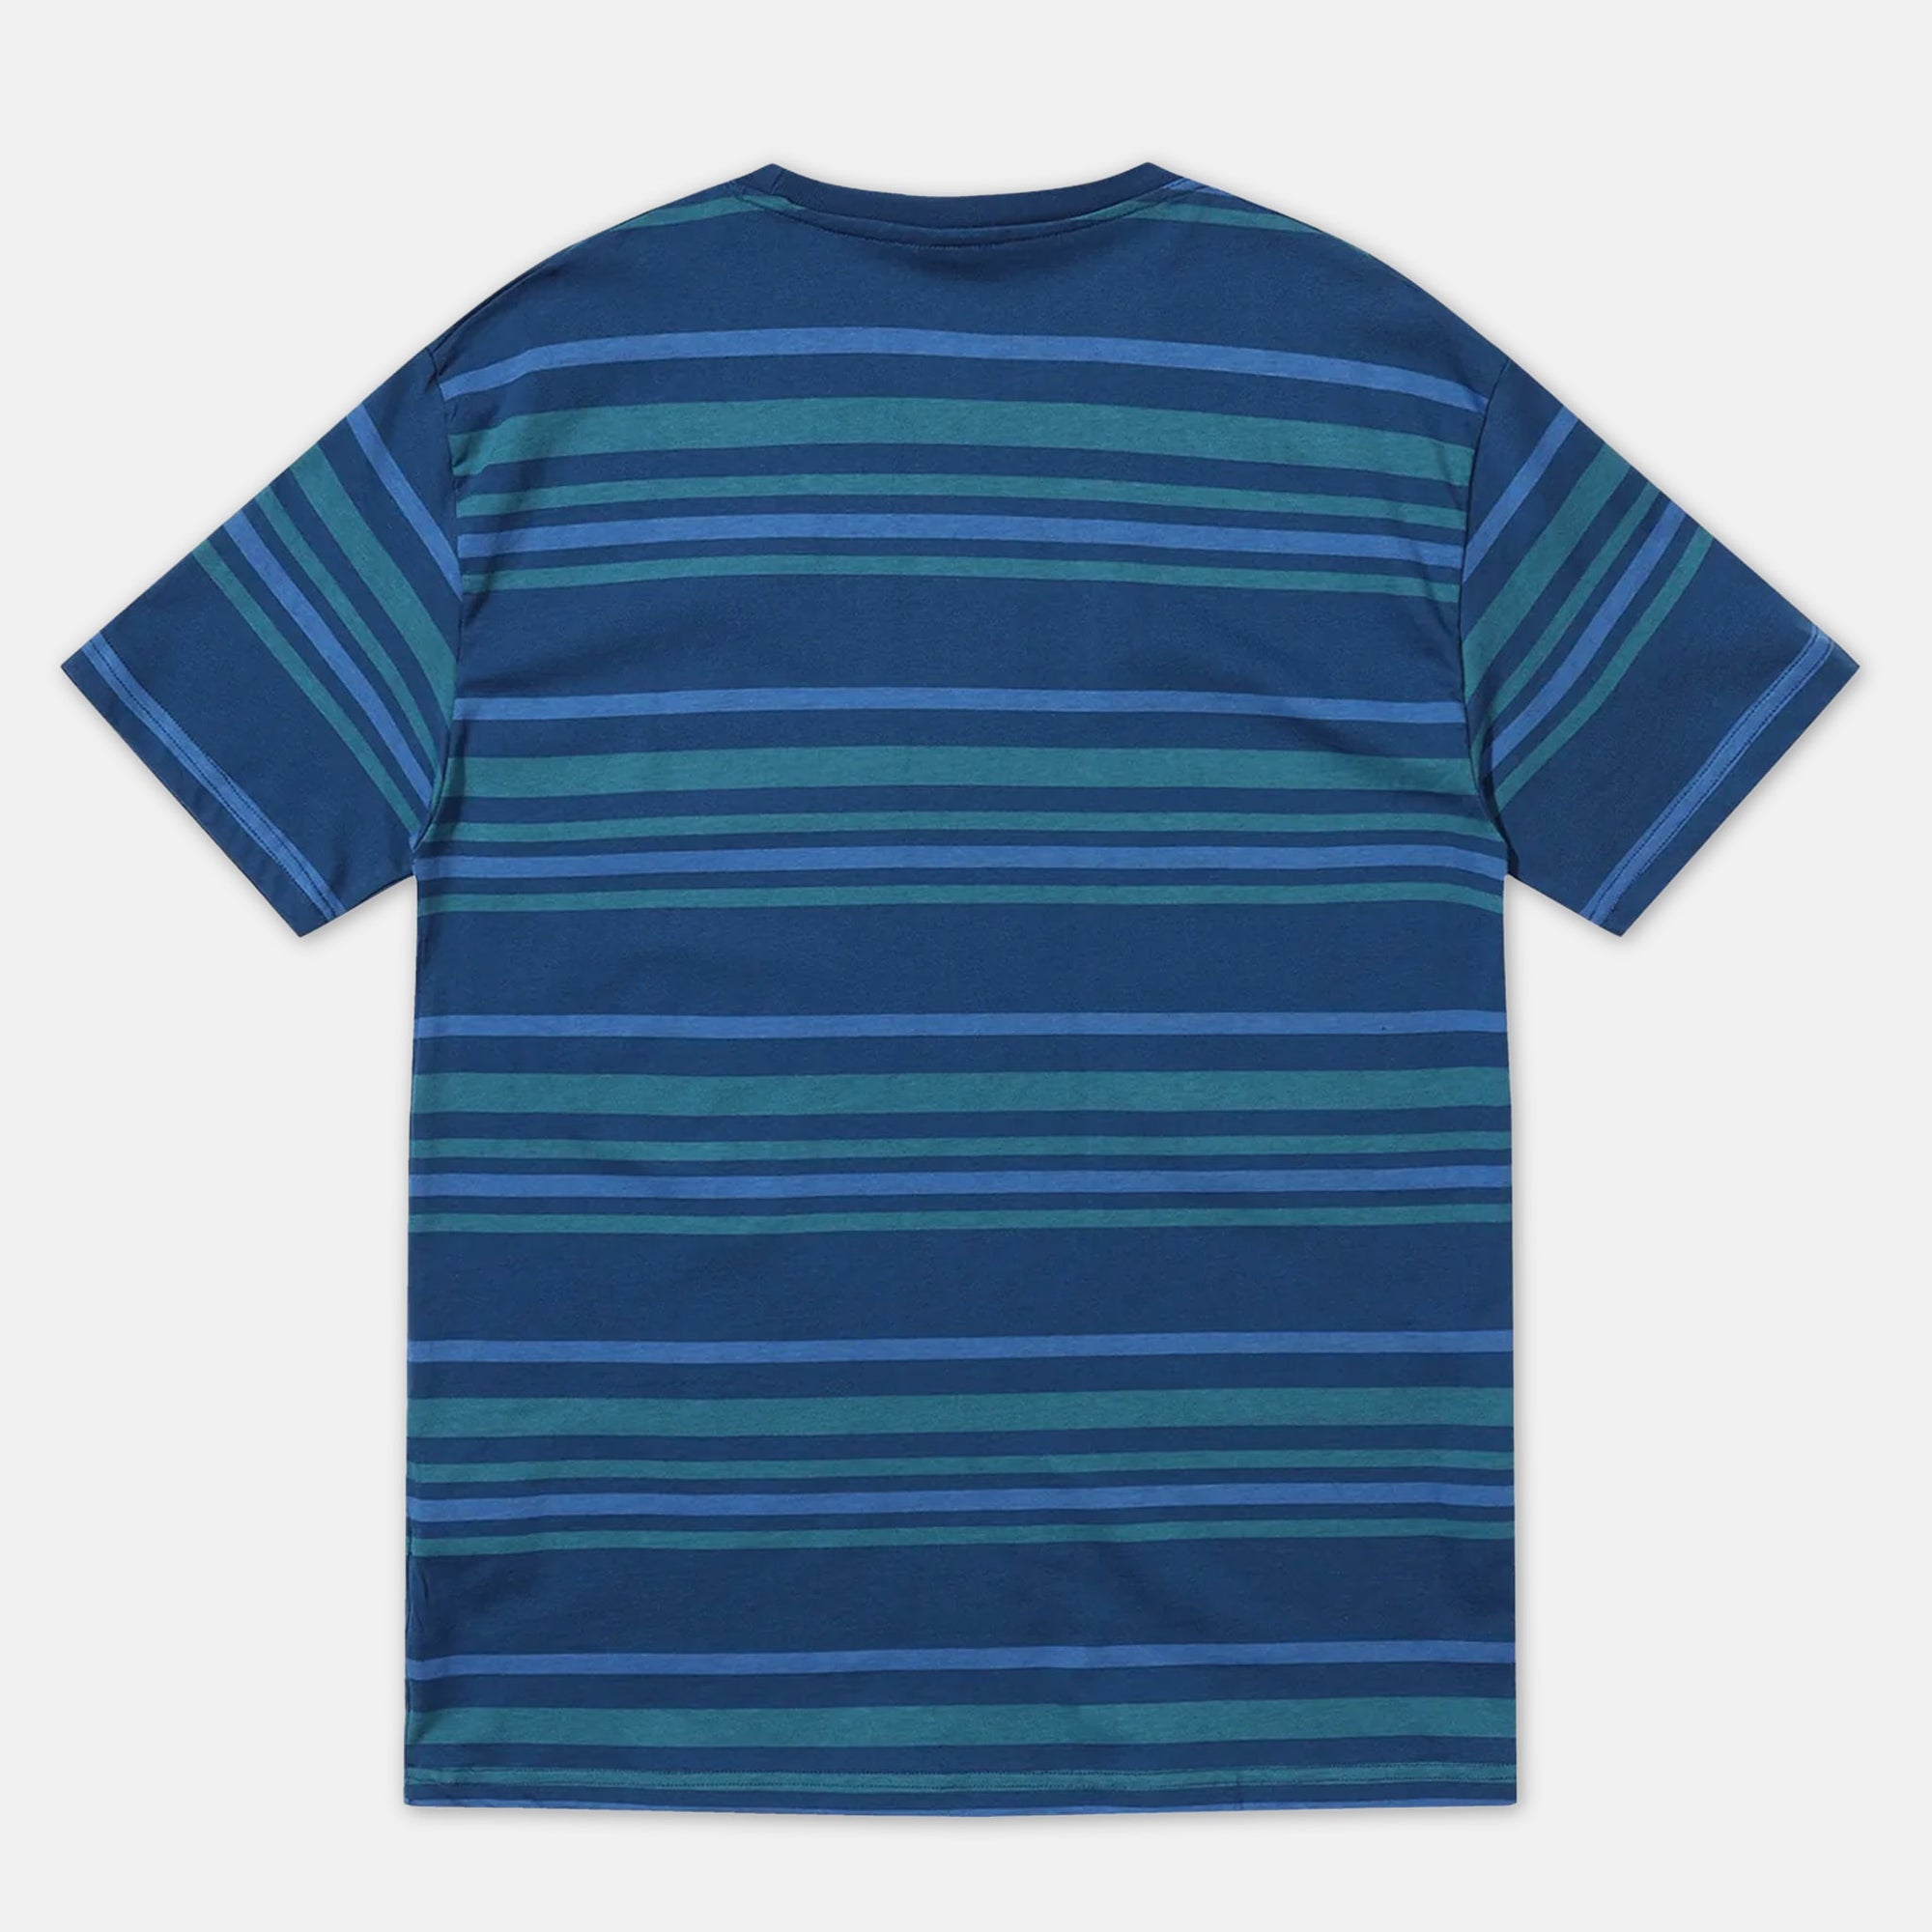 Helas - Bandes T-Shirt - Teal Blue